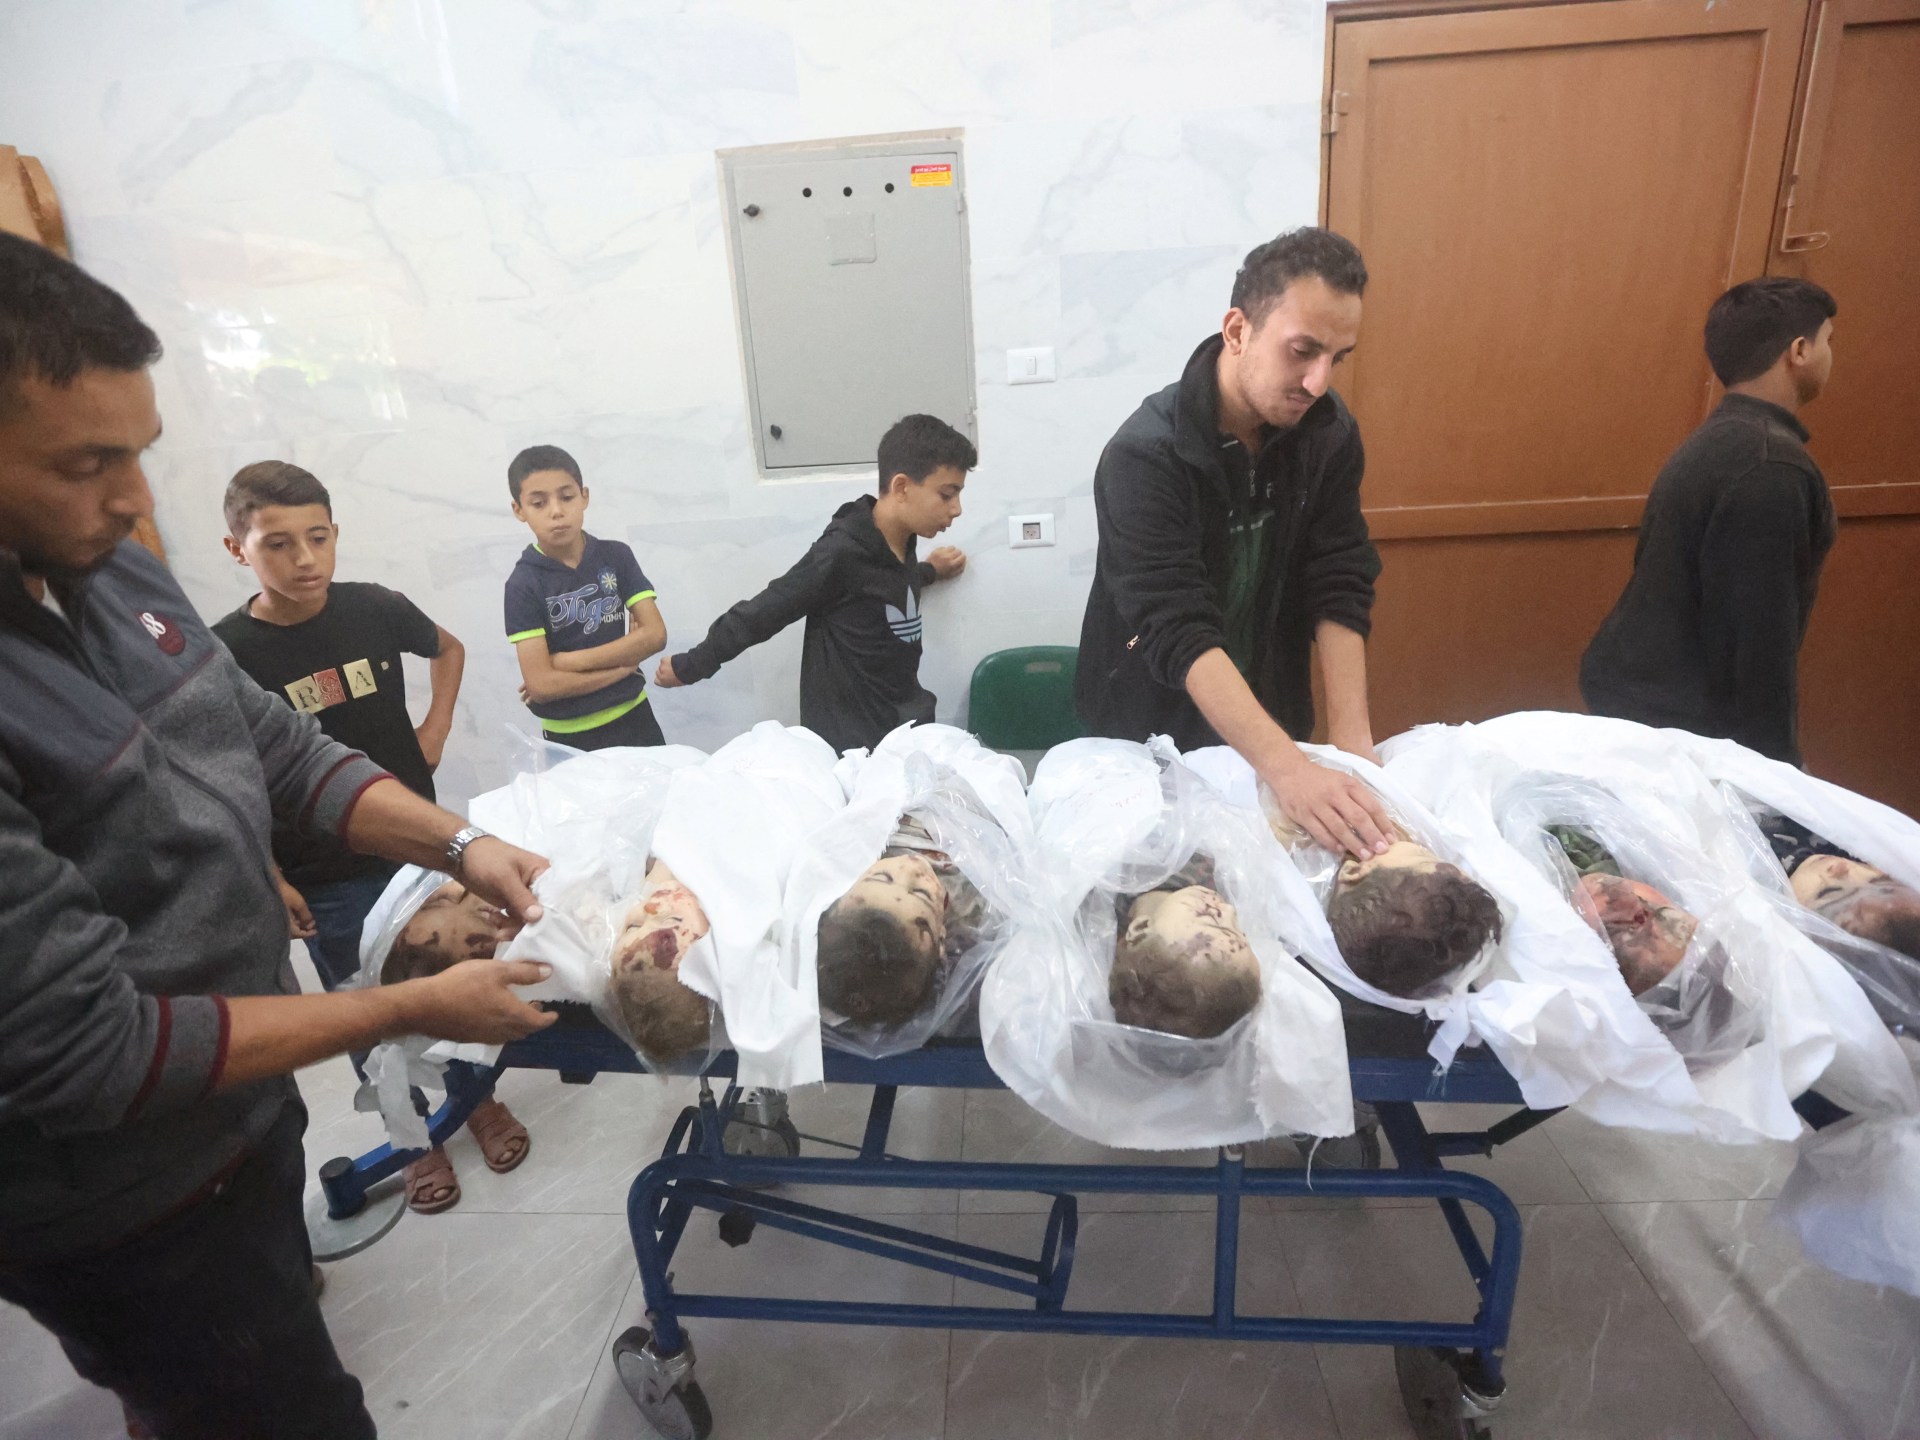 مقال بغارديان: انتقام أطفال غزة الناجين من المذبحة سيكون رهيبا وعشوائيا | سياسة – البوكس نيوز